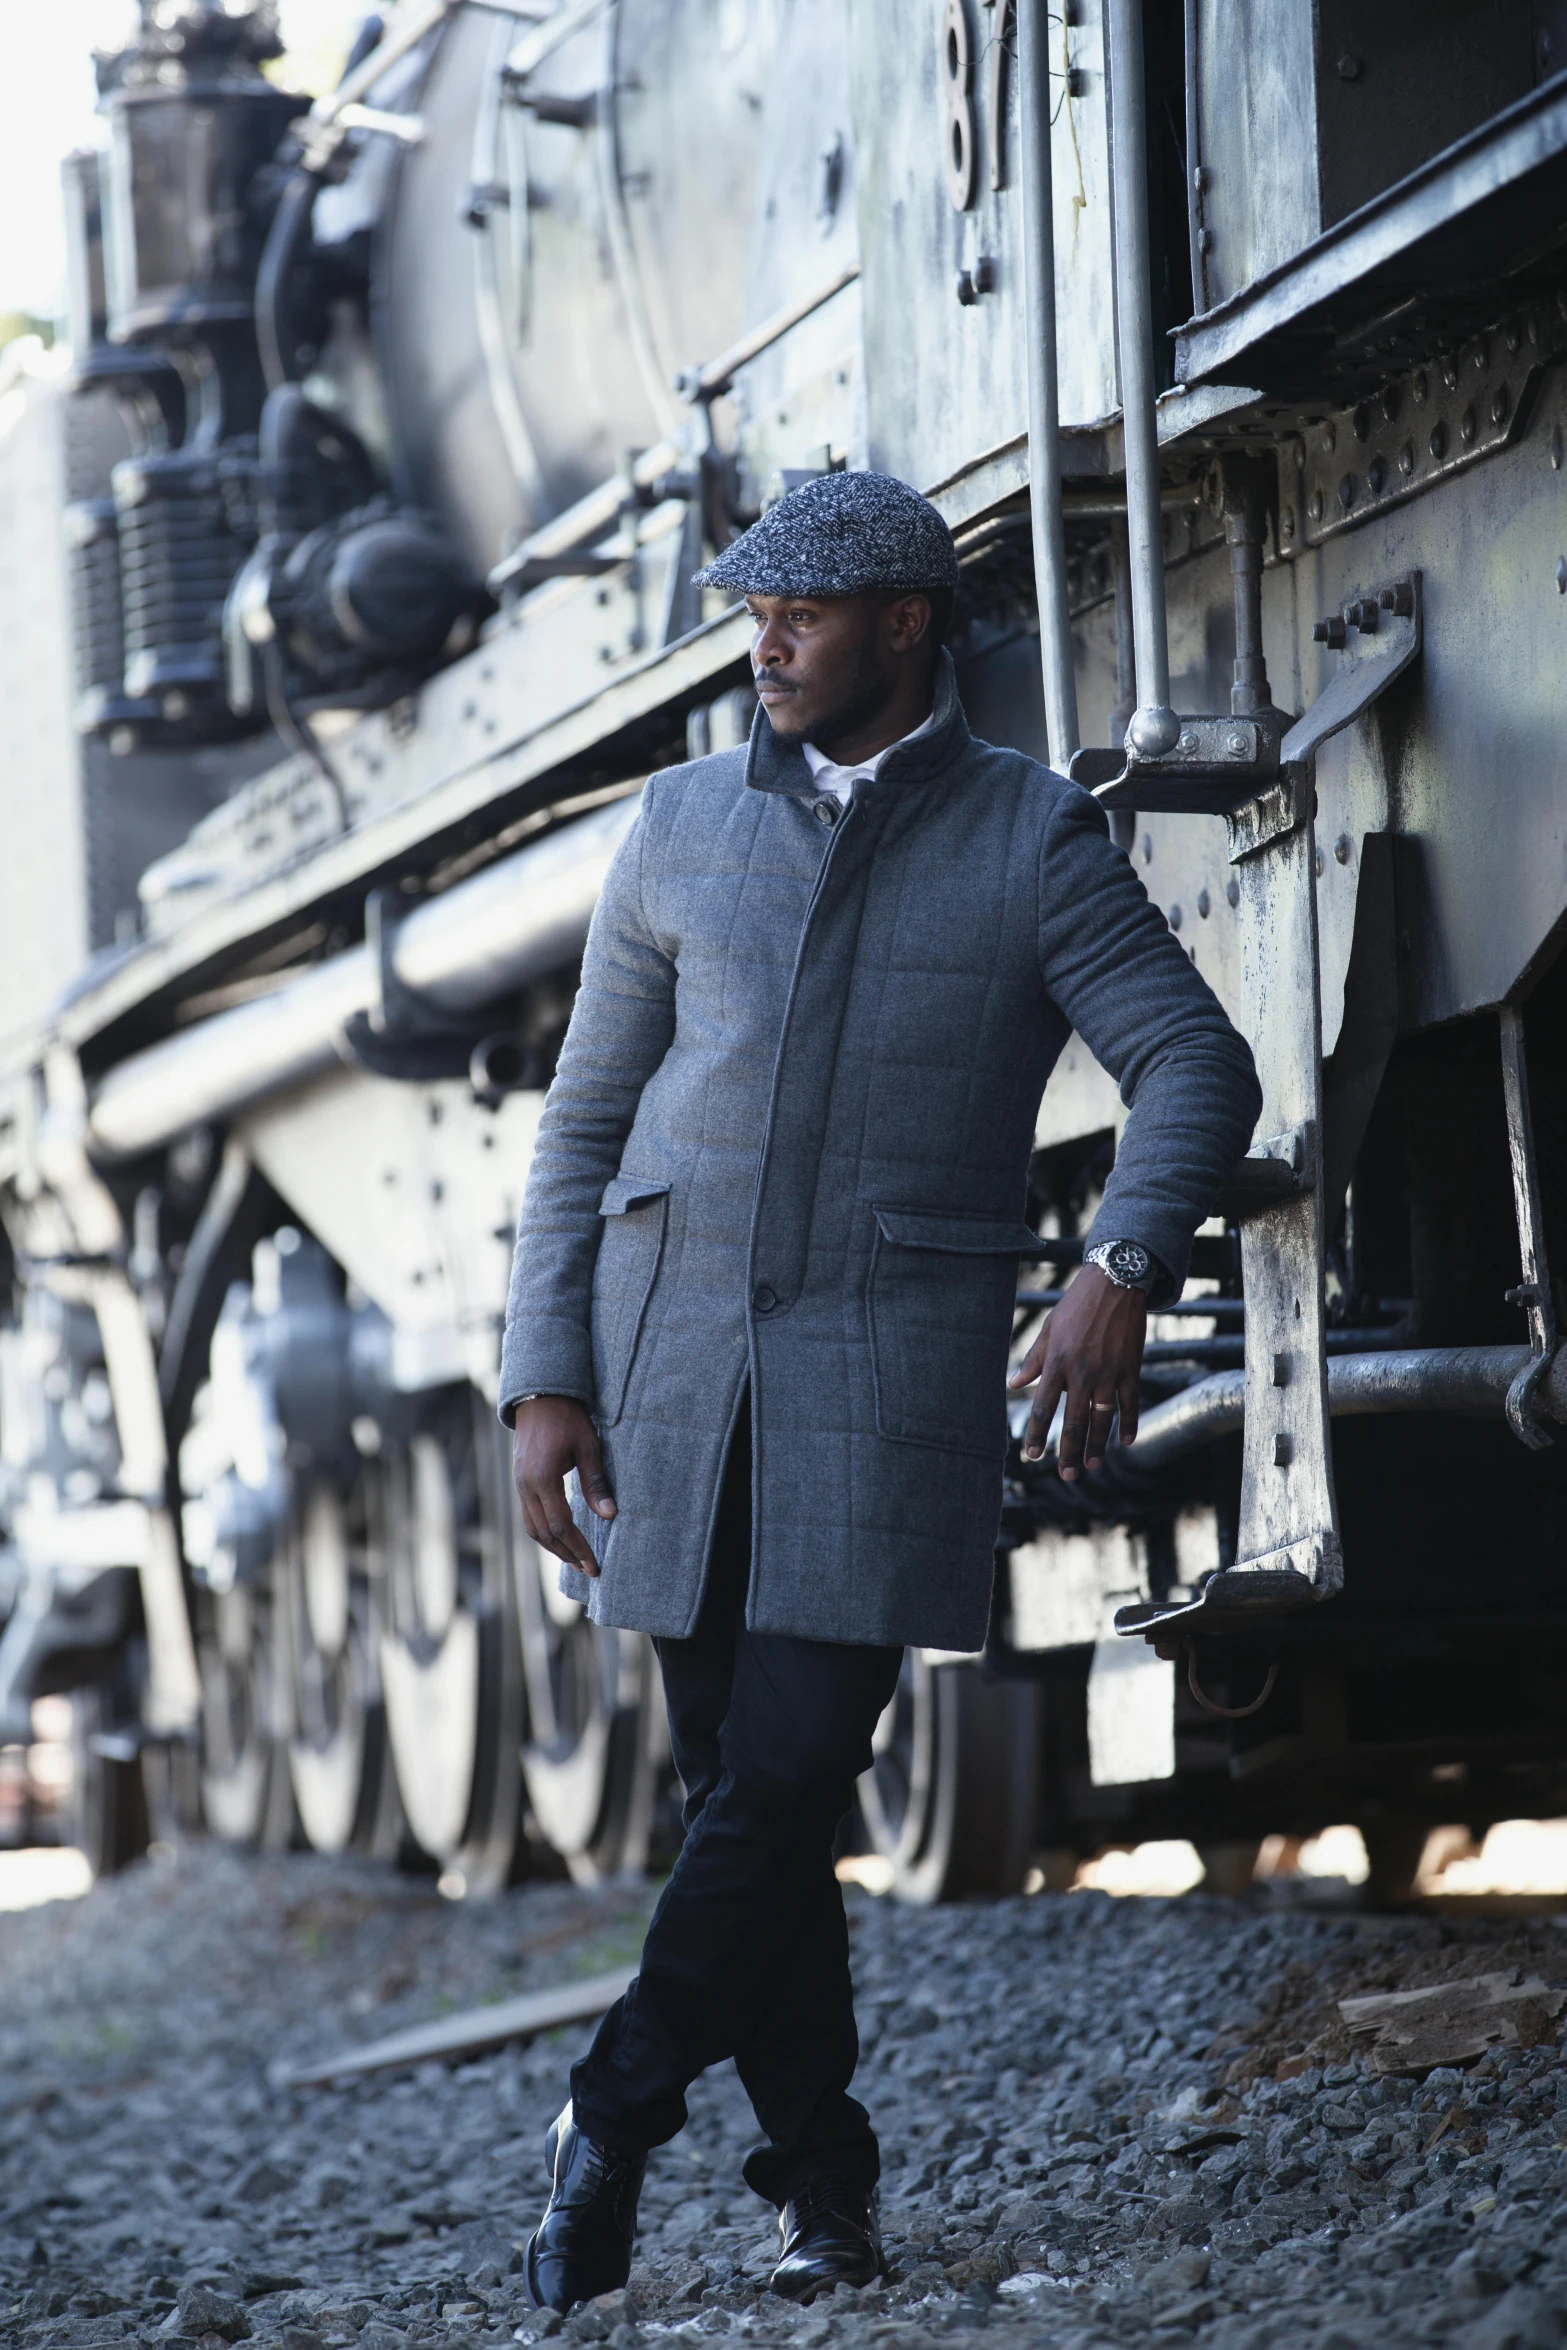 a black man is standing near a train